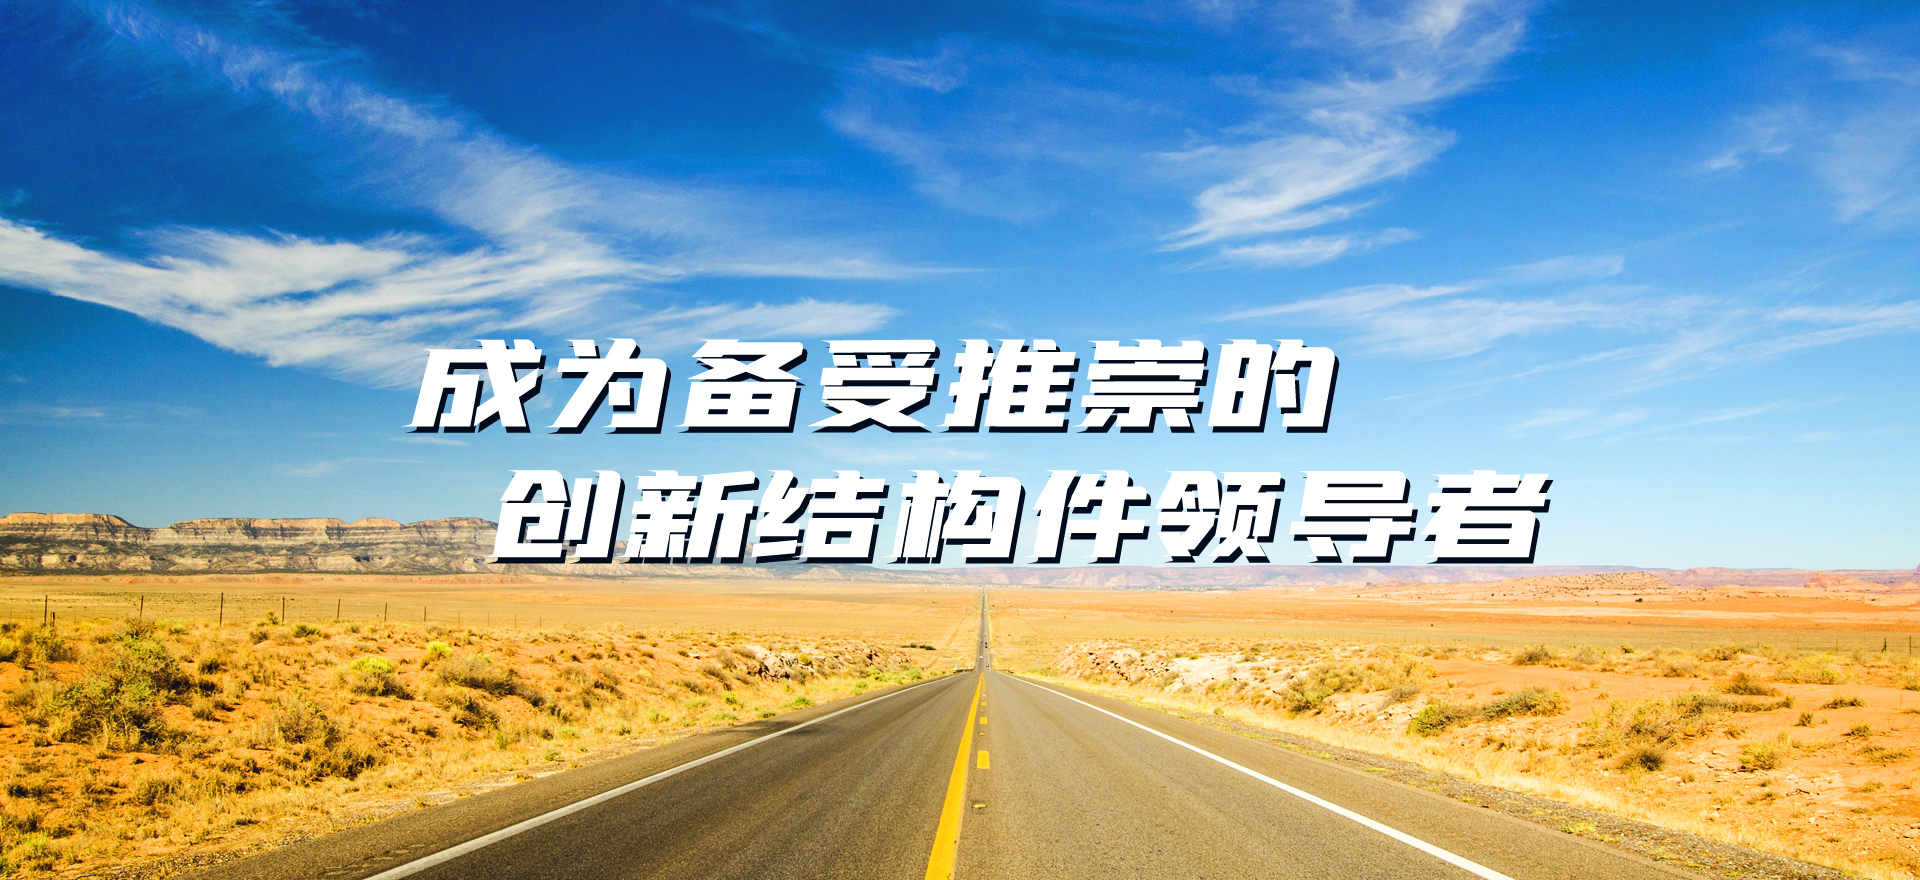 关于当前产品18bet官网·(中国)官方网站的成功案例等相关图片